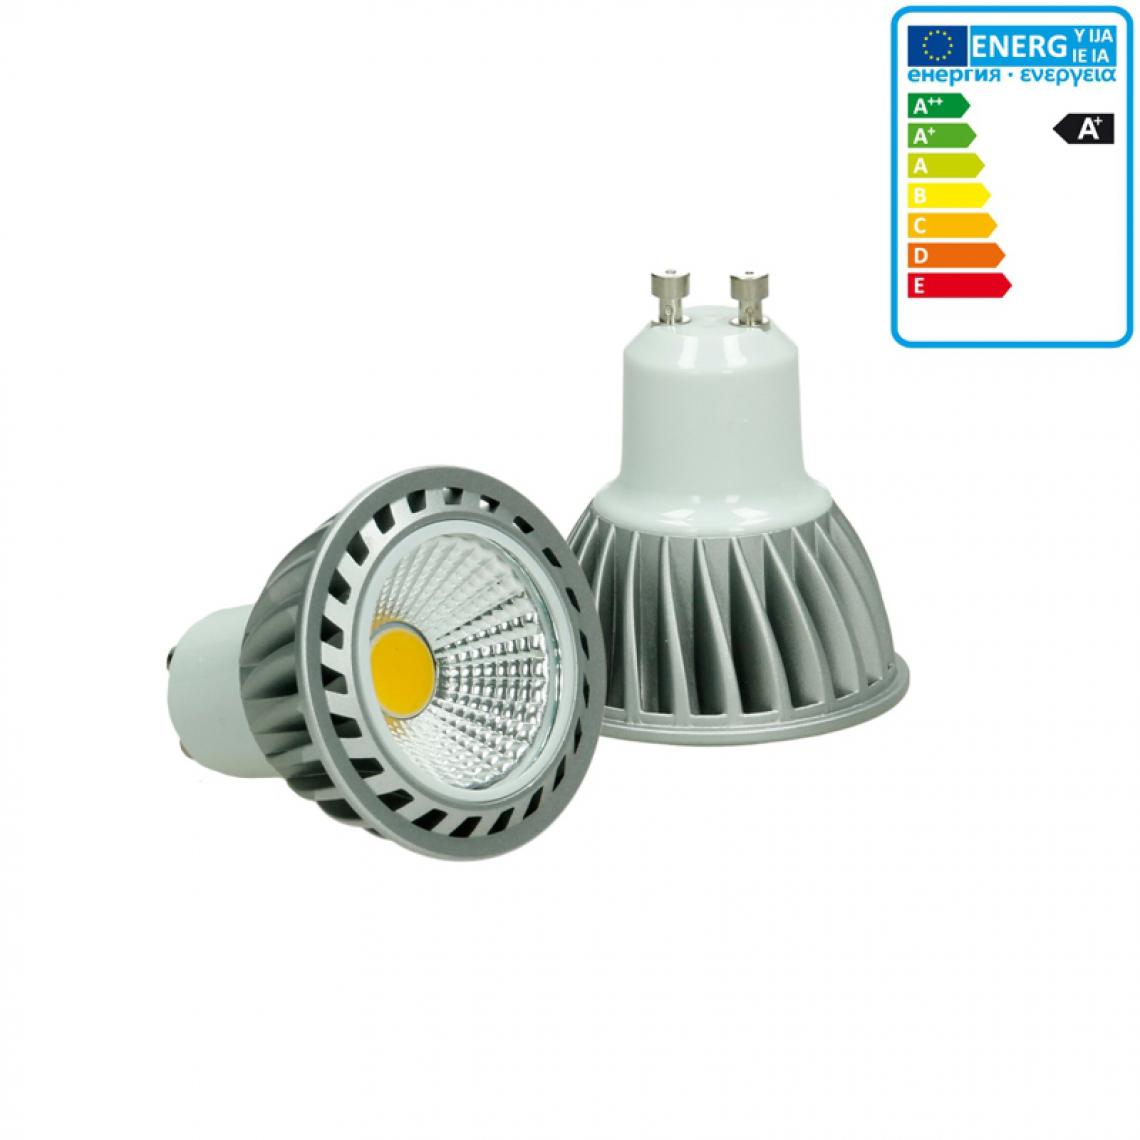 Ecd Germany - ECD Germany LED COB GU10 Ampoule Lampe Spot Lumière 4W Blanc Chaud - Ampoules LED